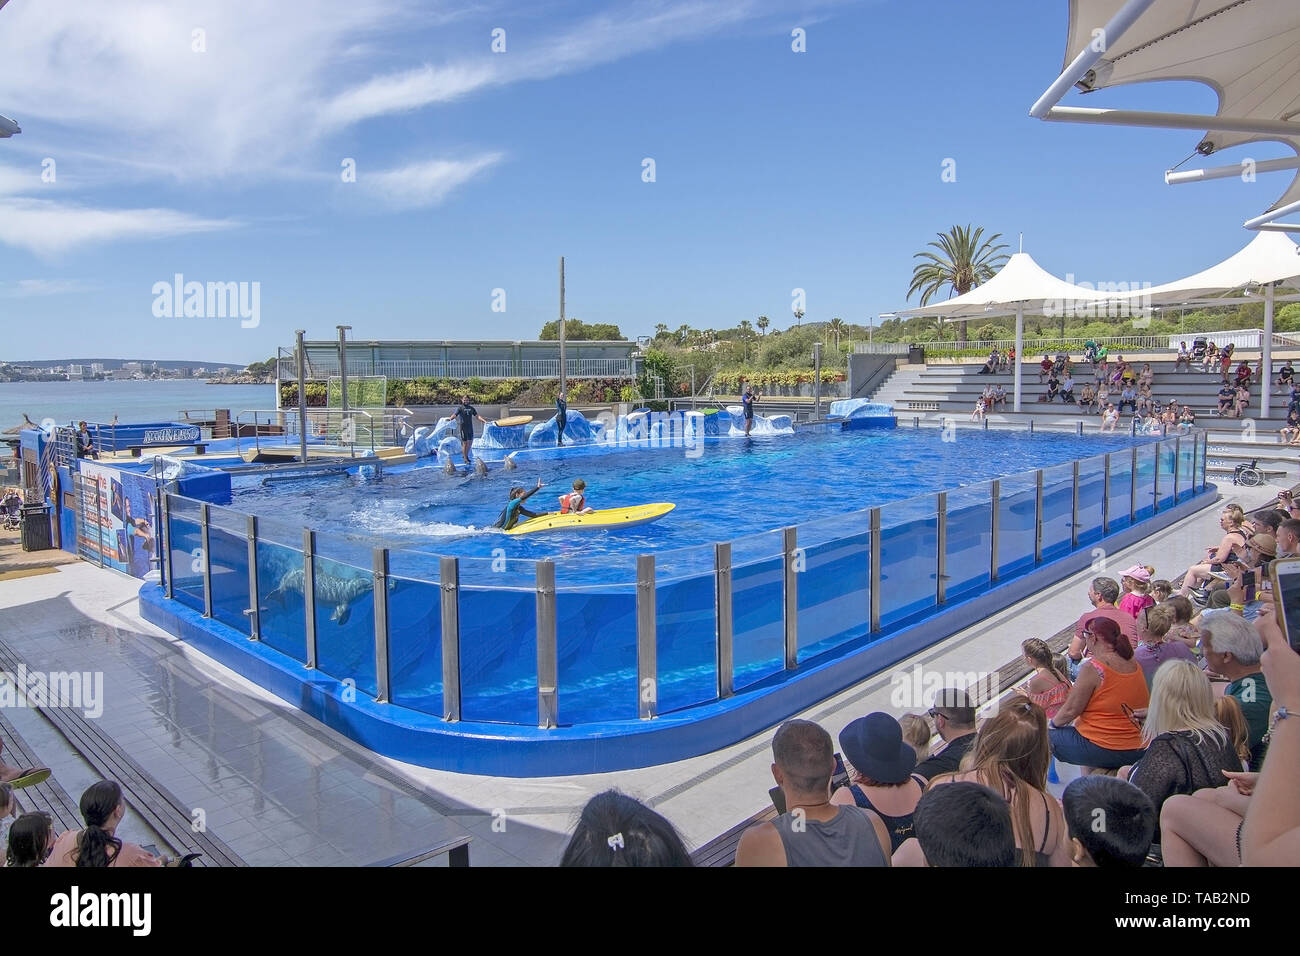 PALMA, MALLORCA, SPAIN - MAY 22, 2019: Dolphin show Marineland on May 22, 2019 in Palma, Mallorca, Spain. Stock Photo